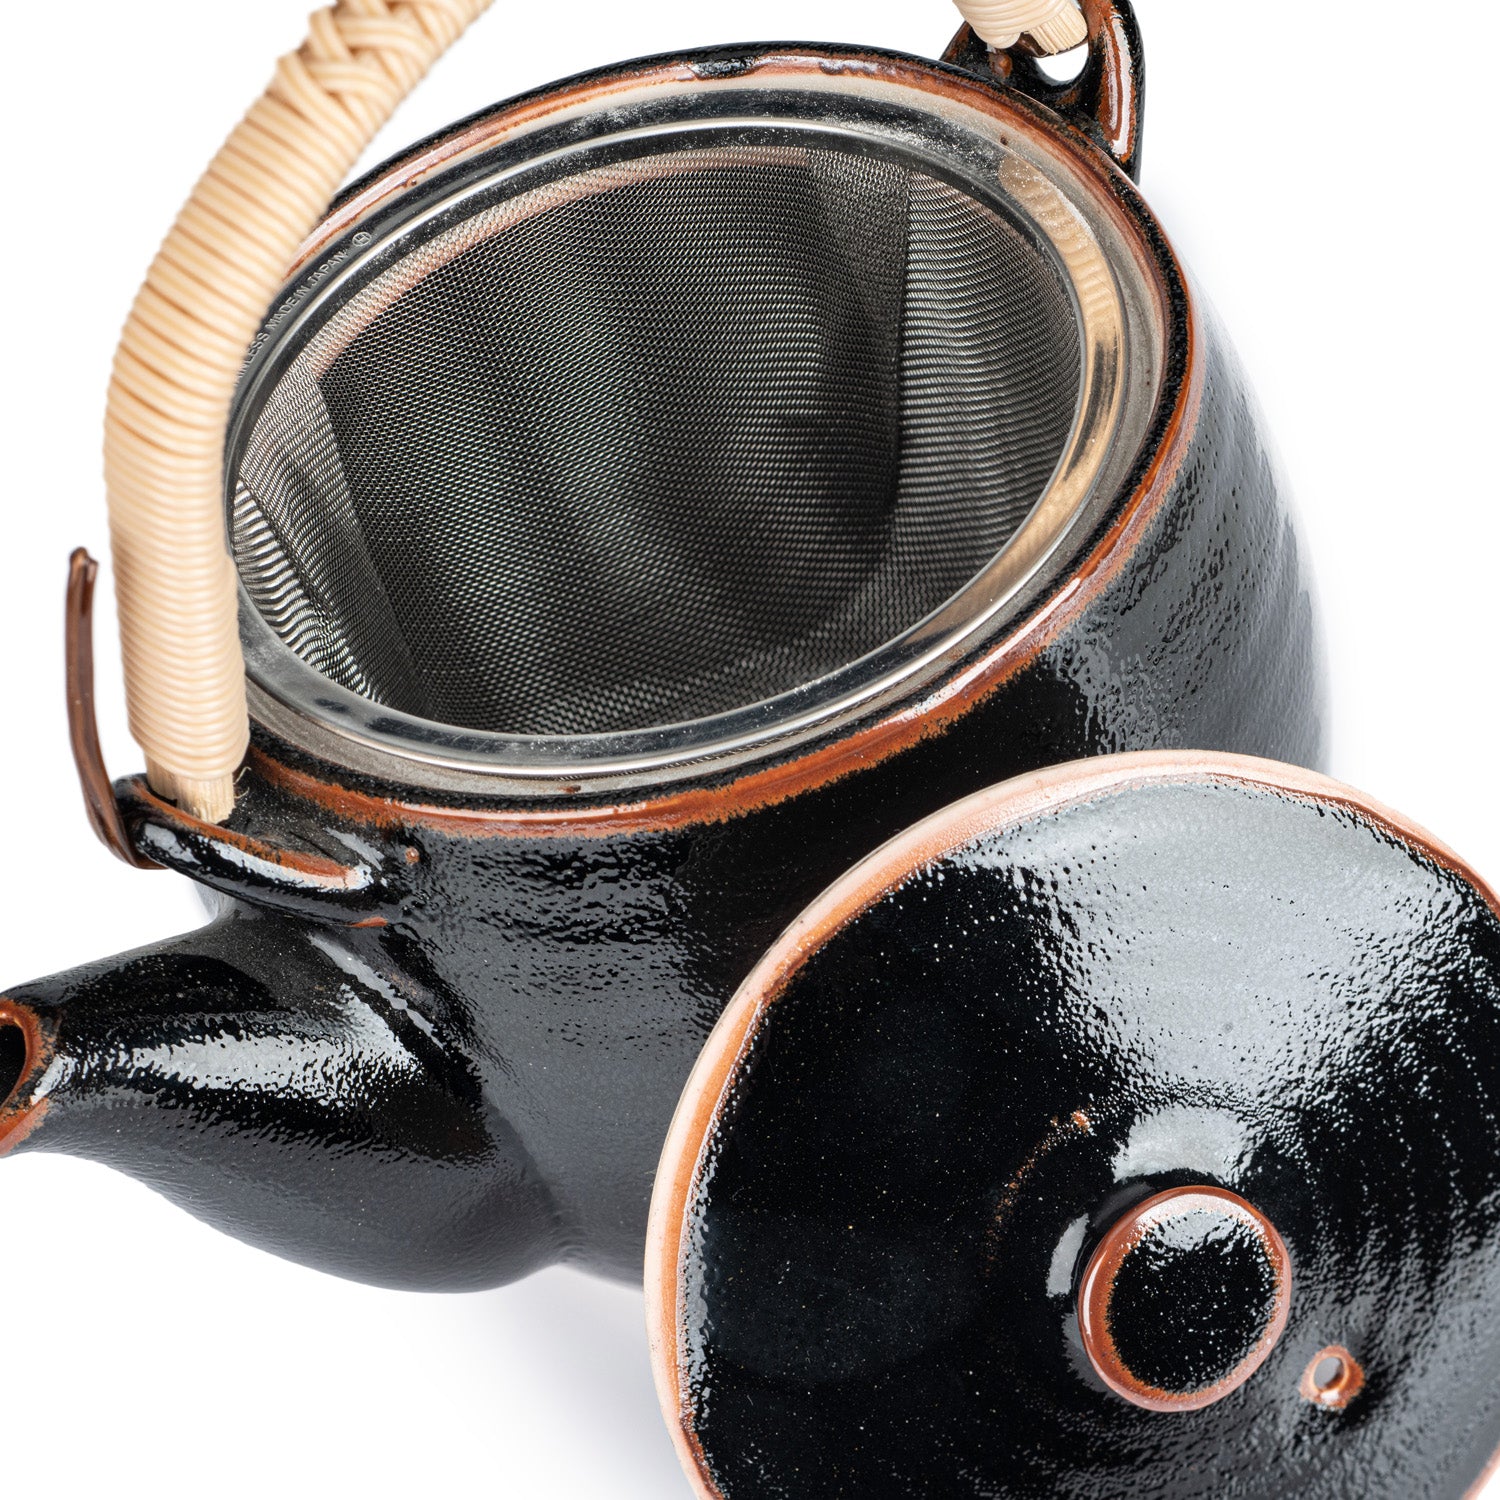 Tenmoku Black Japanese Tea Pot and Cup Gift Set top